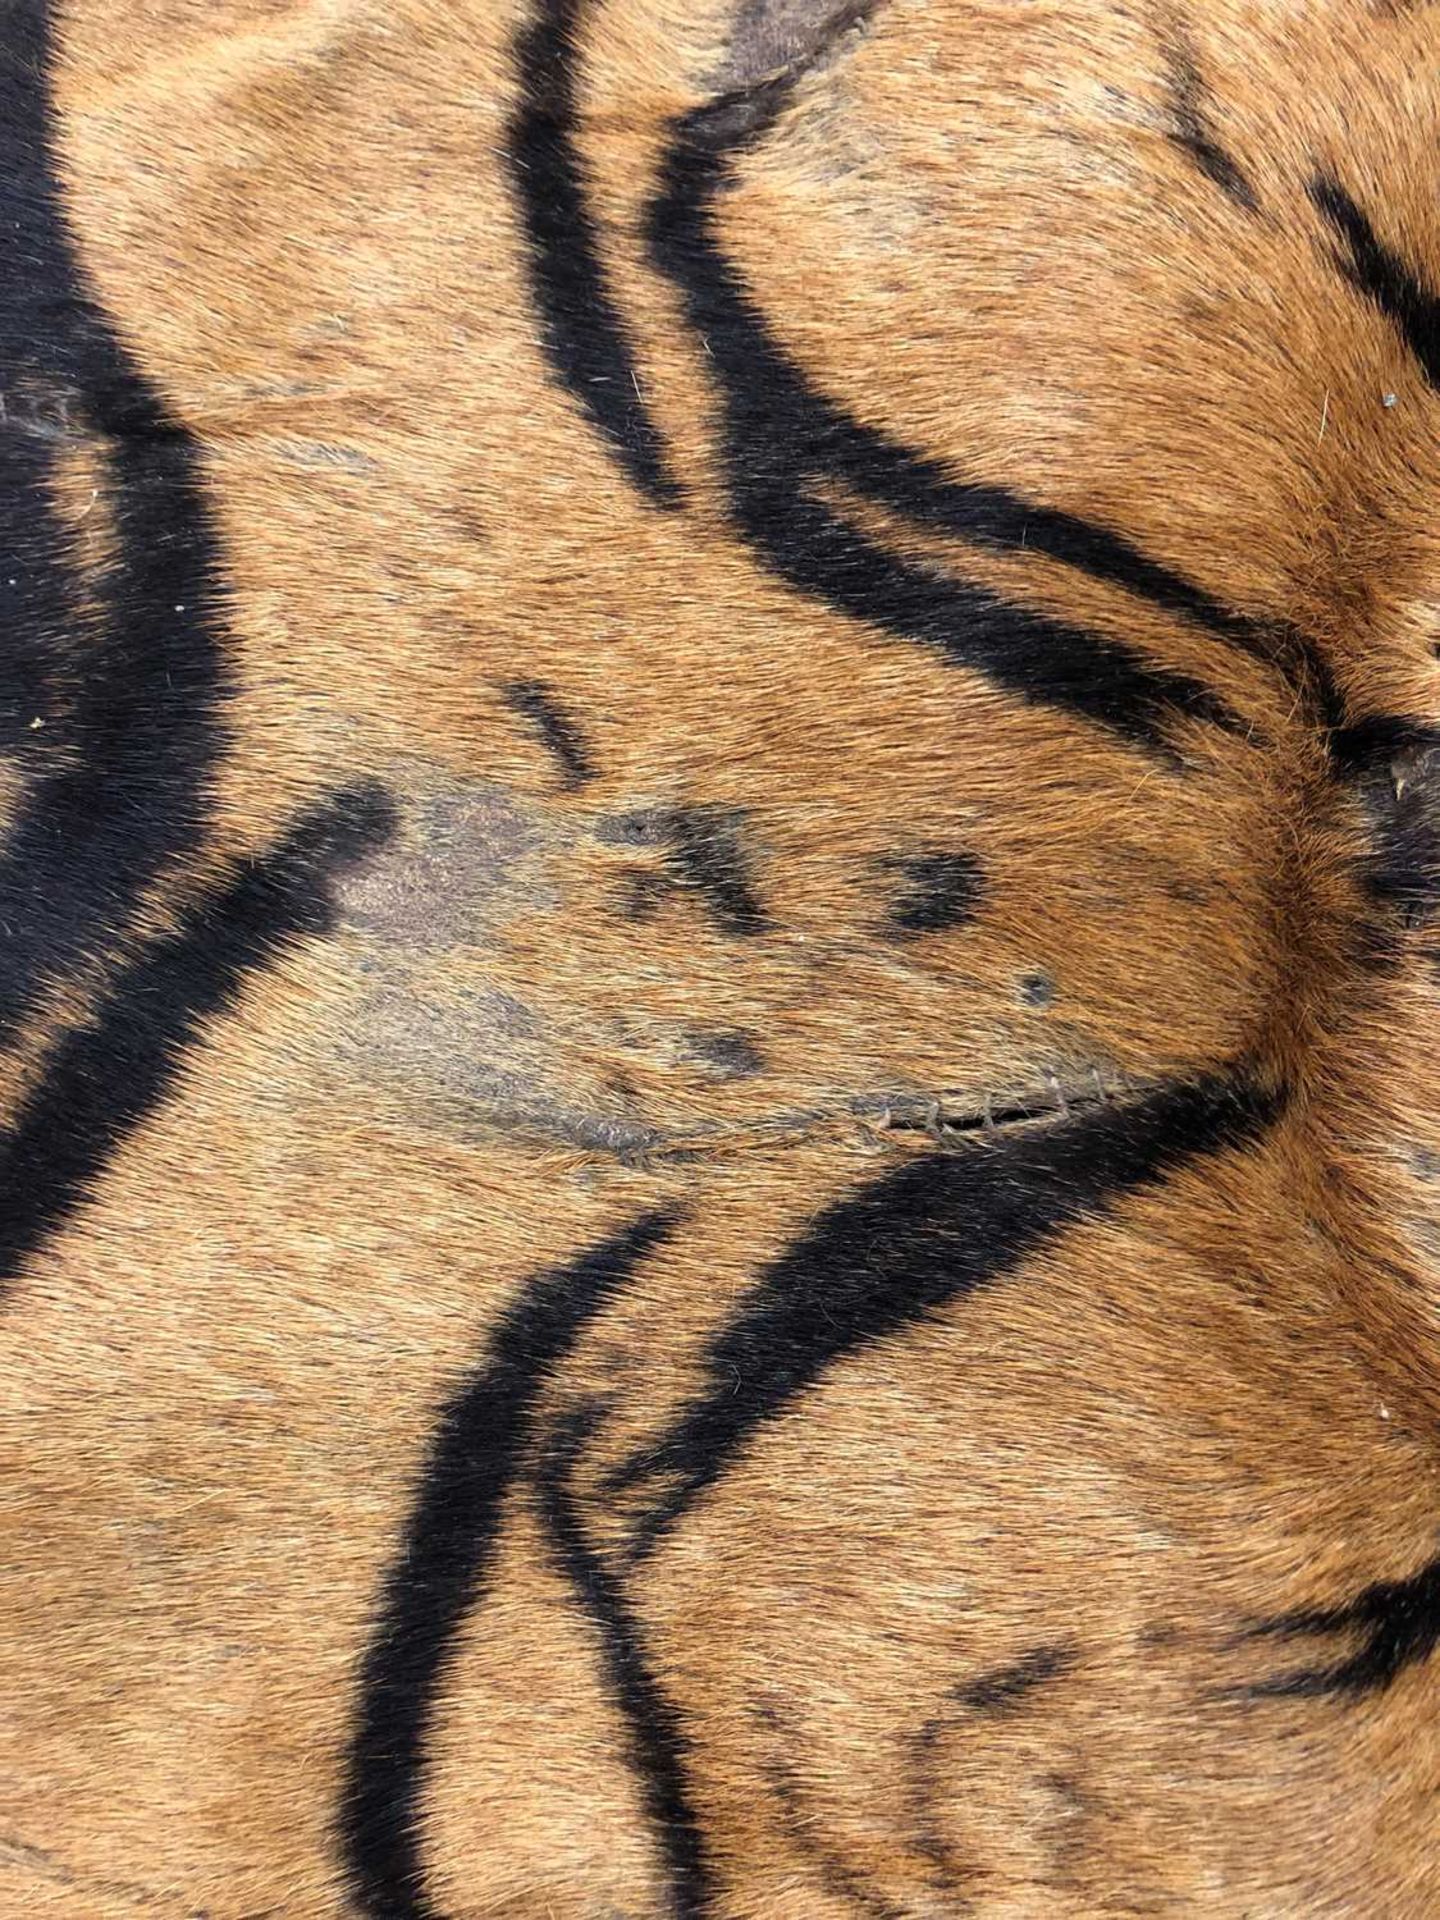 Taxidermy: A taxidermy tiger skin rug by Rowland Ward - Image 5 of 26